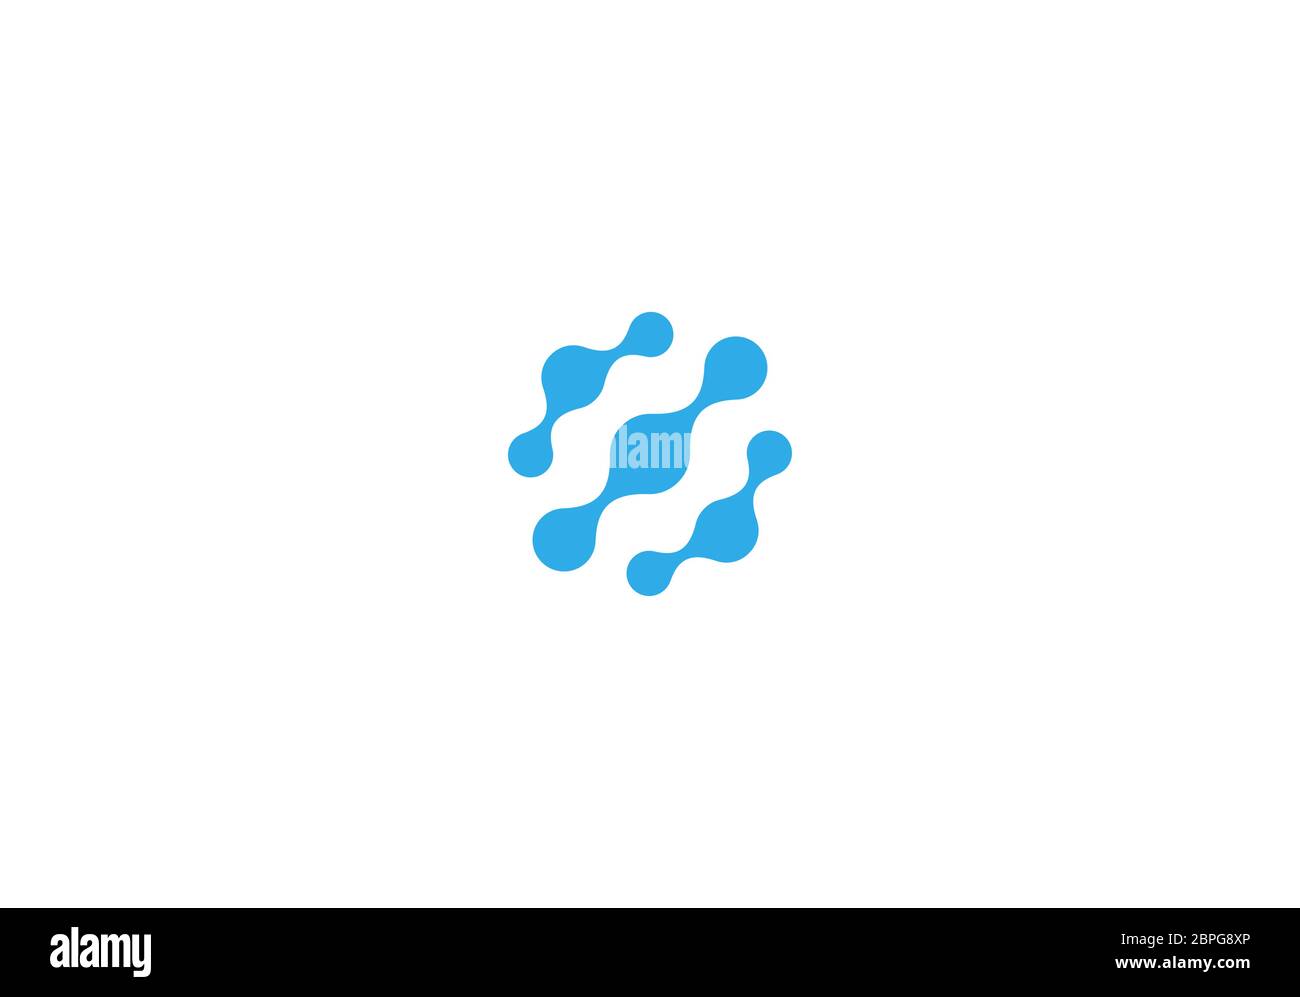 Nervenzellen-Verbindungssymbol, dna-Logotyp. Runde aqua Moleküle Vektor-Emblem. Blaue abstrakte Wasserblasen, Molekülkette Logo. Symbol für Autowäsche. Stock Vektor